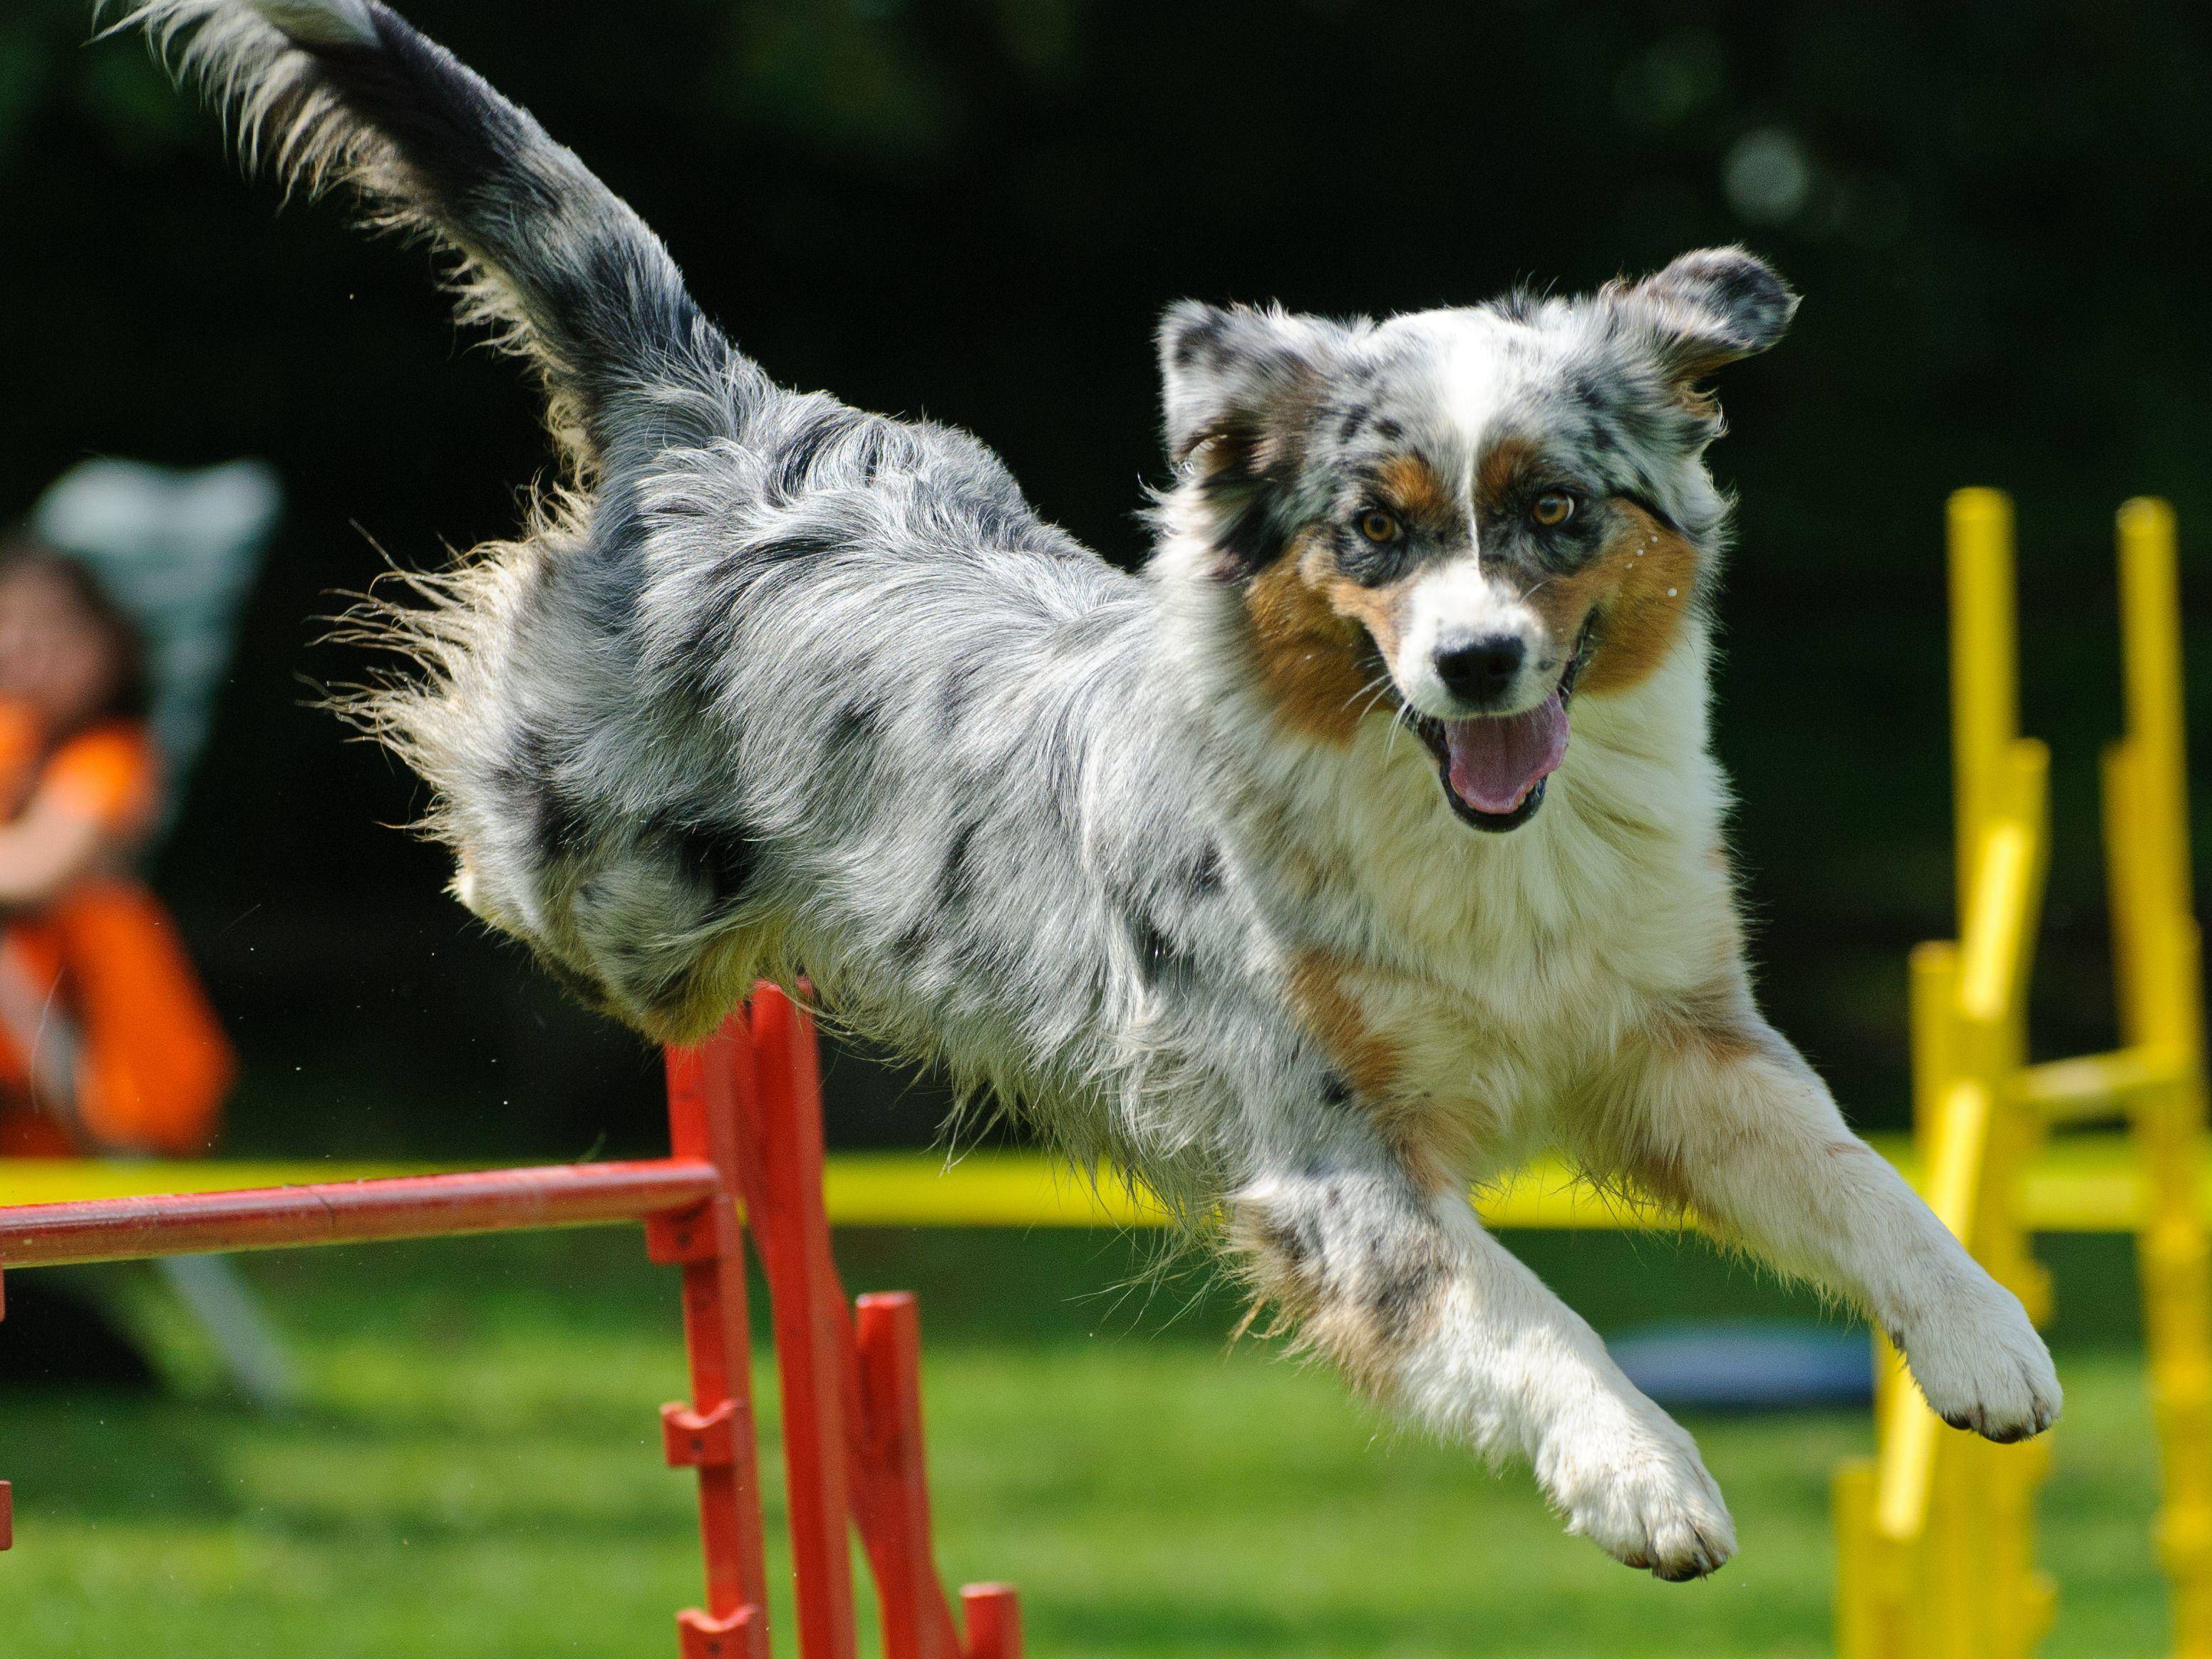 Das macht Spaß! Ein Australian Sheperd nimmt ein Agility-Hundehindernis — Bild: Shutterstock / gpod